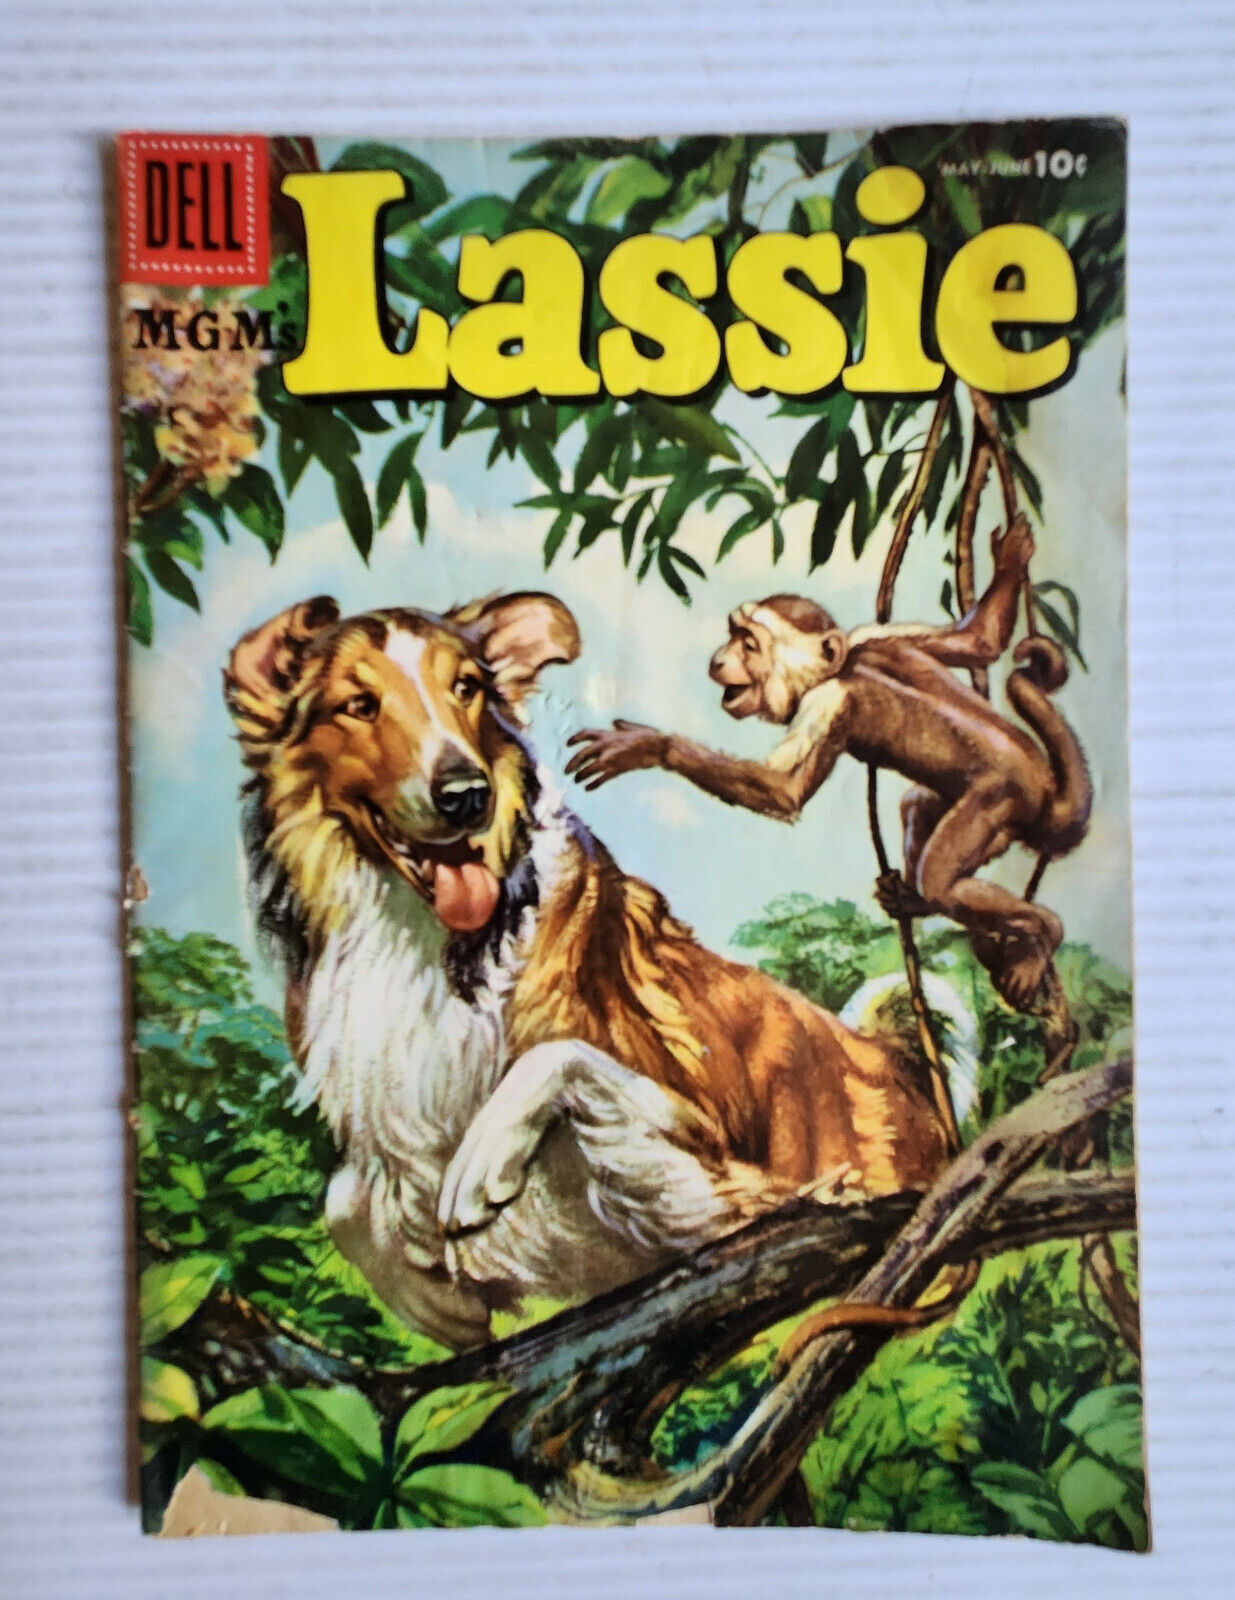 Lassie Dell Comics Vol. 1 No. 26 1956